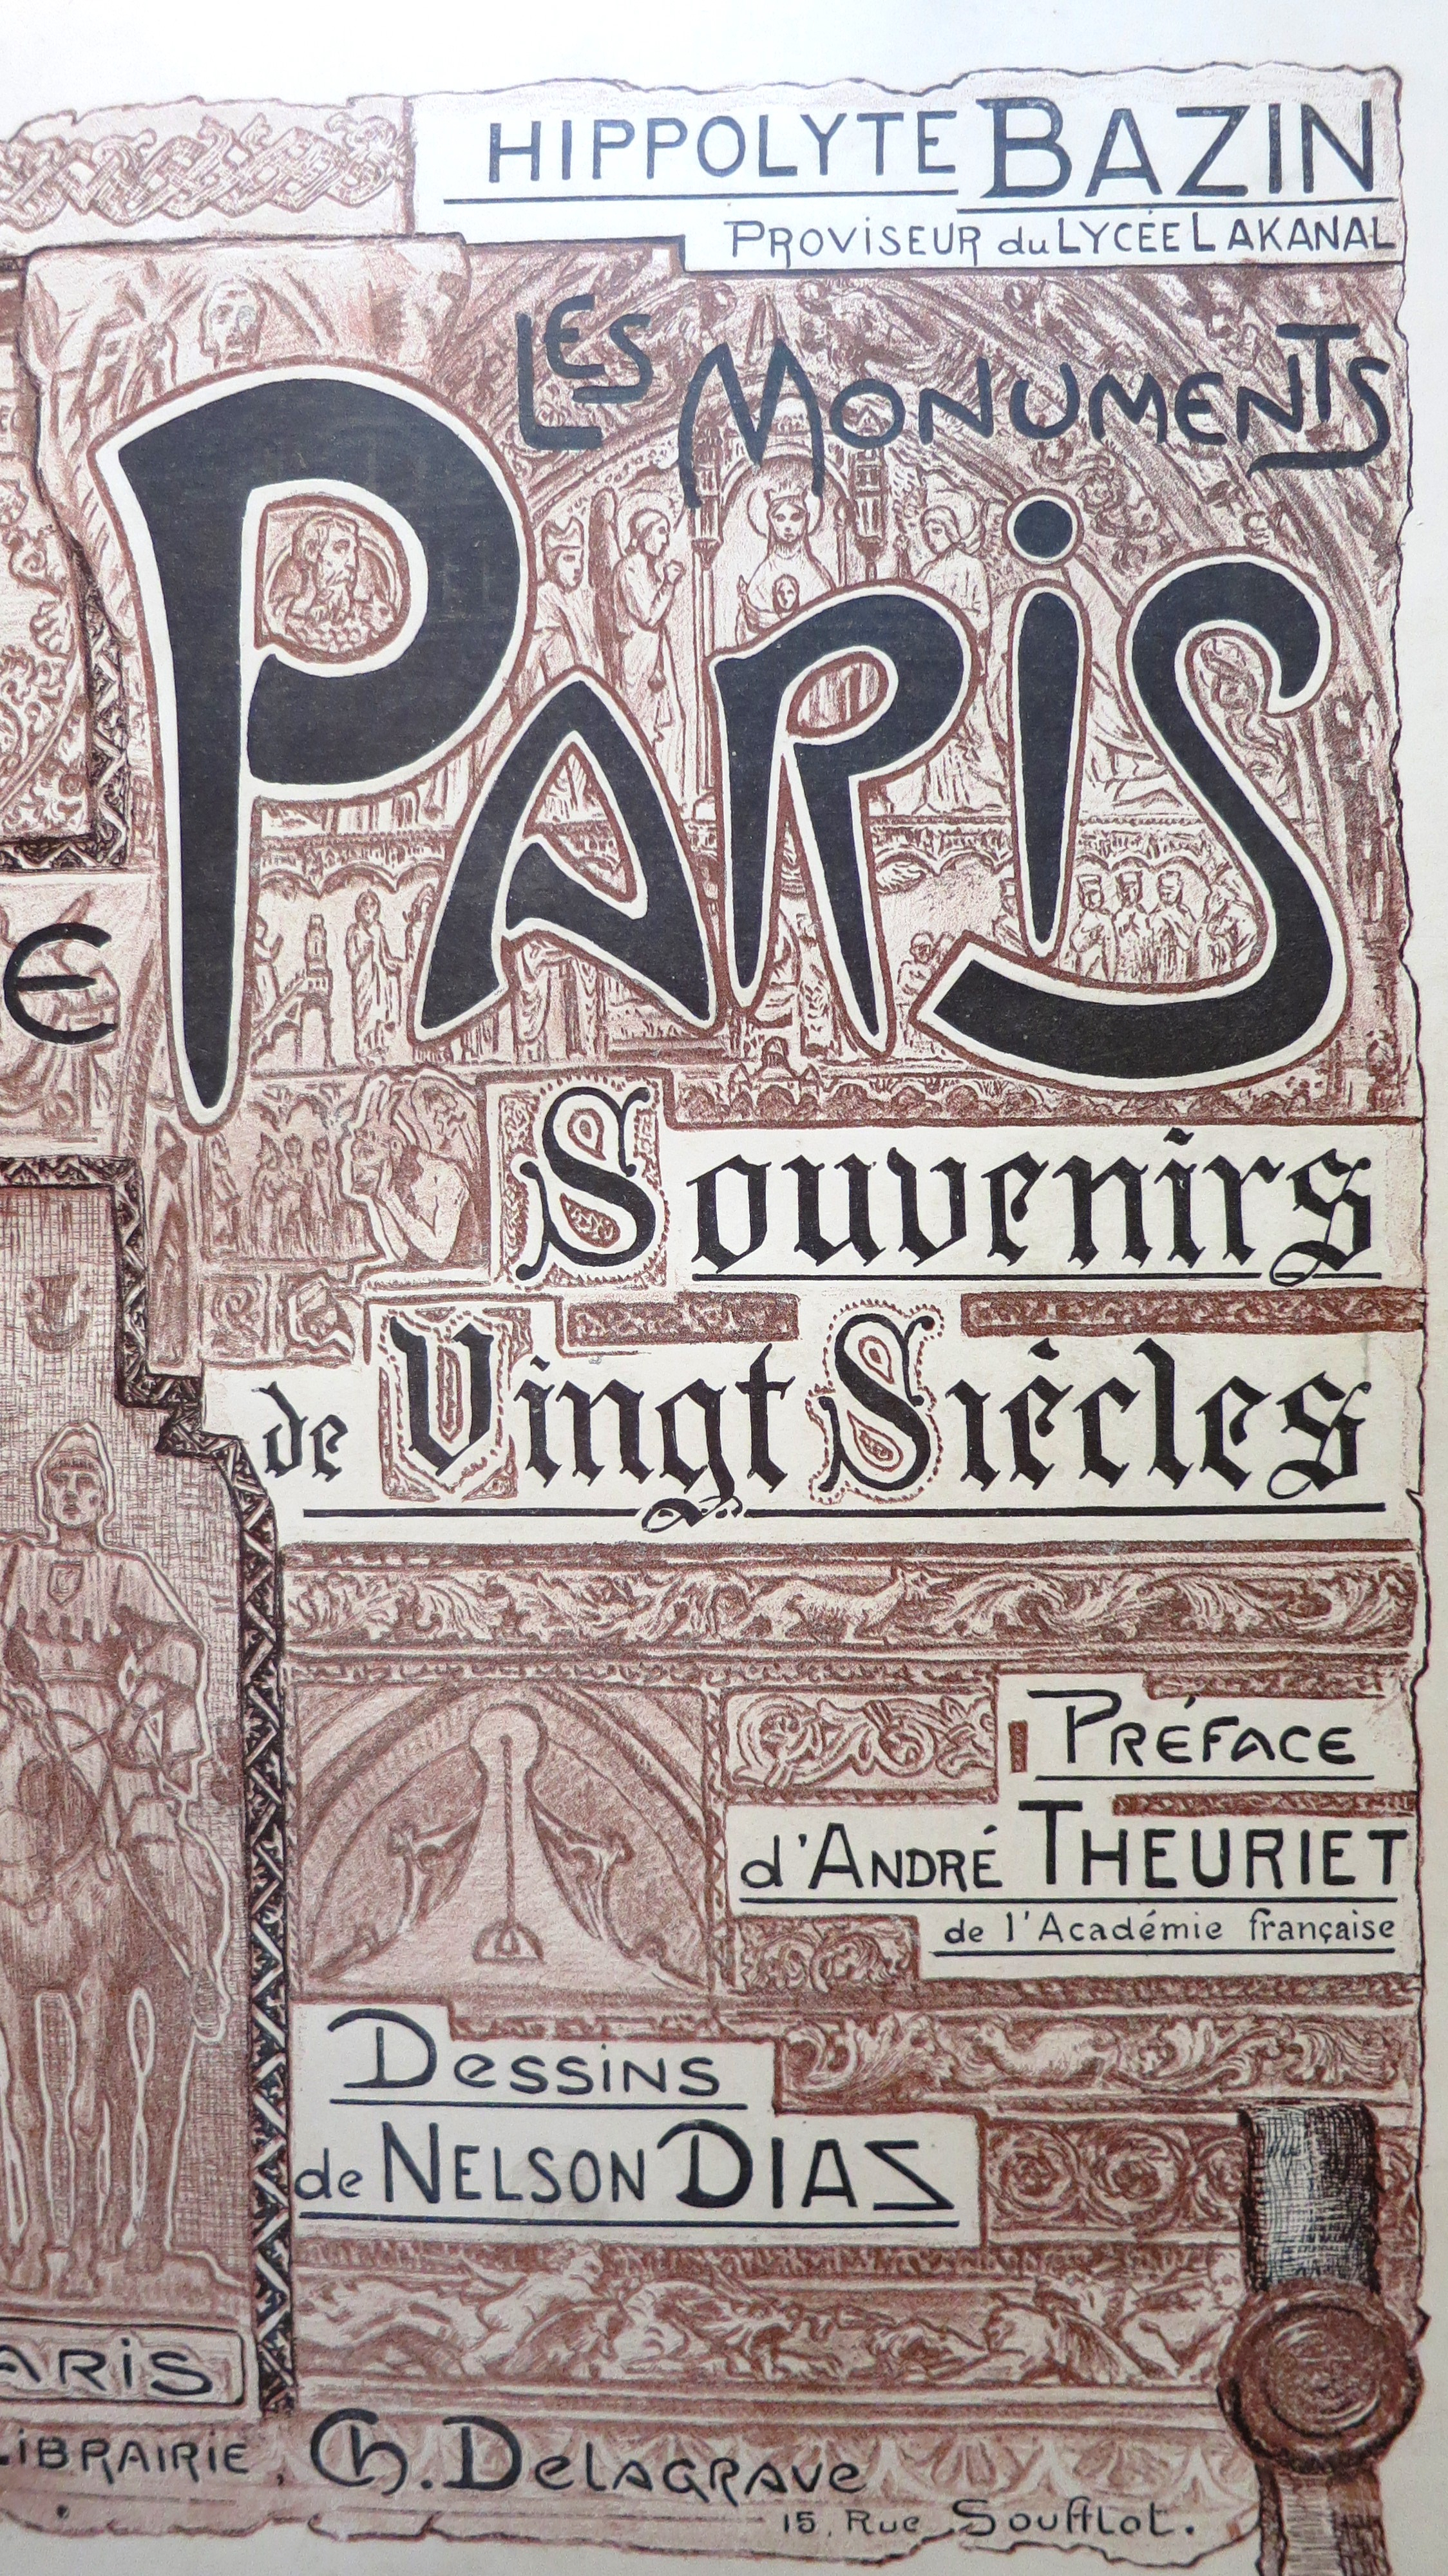 Les Monuments de Paris Souvenirs de vingt siècles